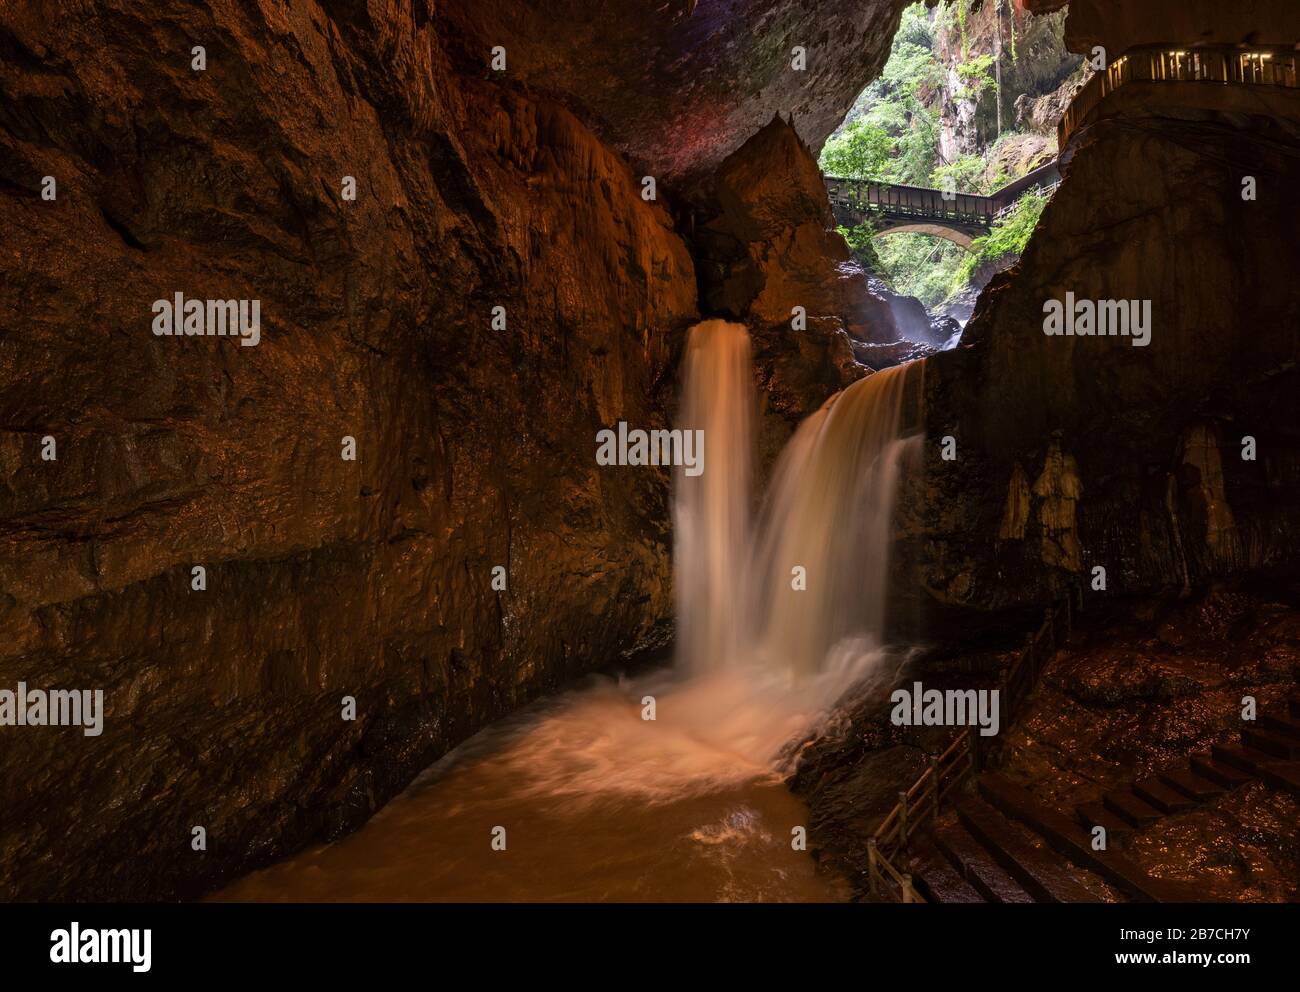 Les chutes d'eau volantes pour femmes et hommes, Cíxióng Fēi pù, dans la grotte de Dragon (Wòlóng Dòng) située dans la gorge et la grotte de Jiuxiang, ont été utilisées dans le film de Jackie Chan Myth. Banque D'Images